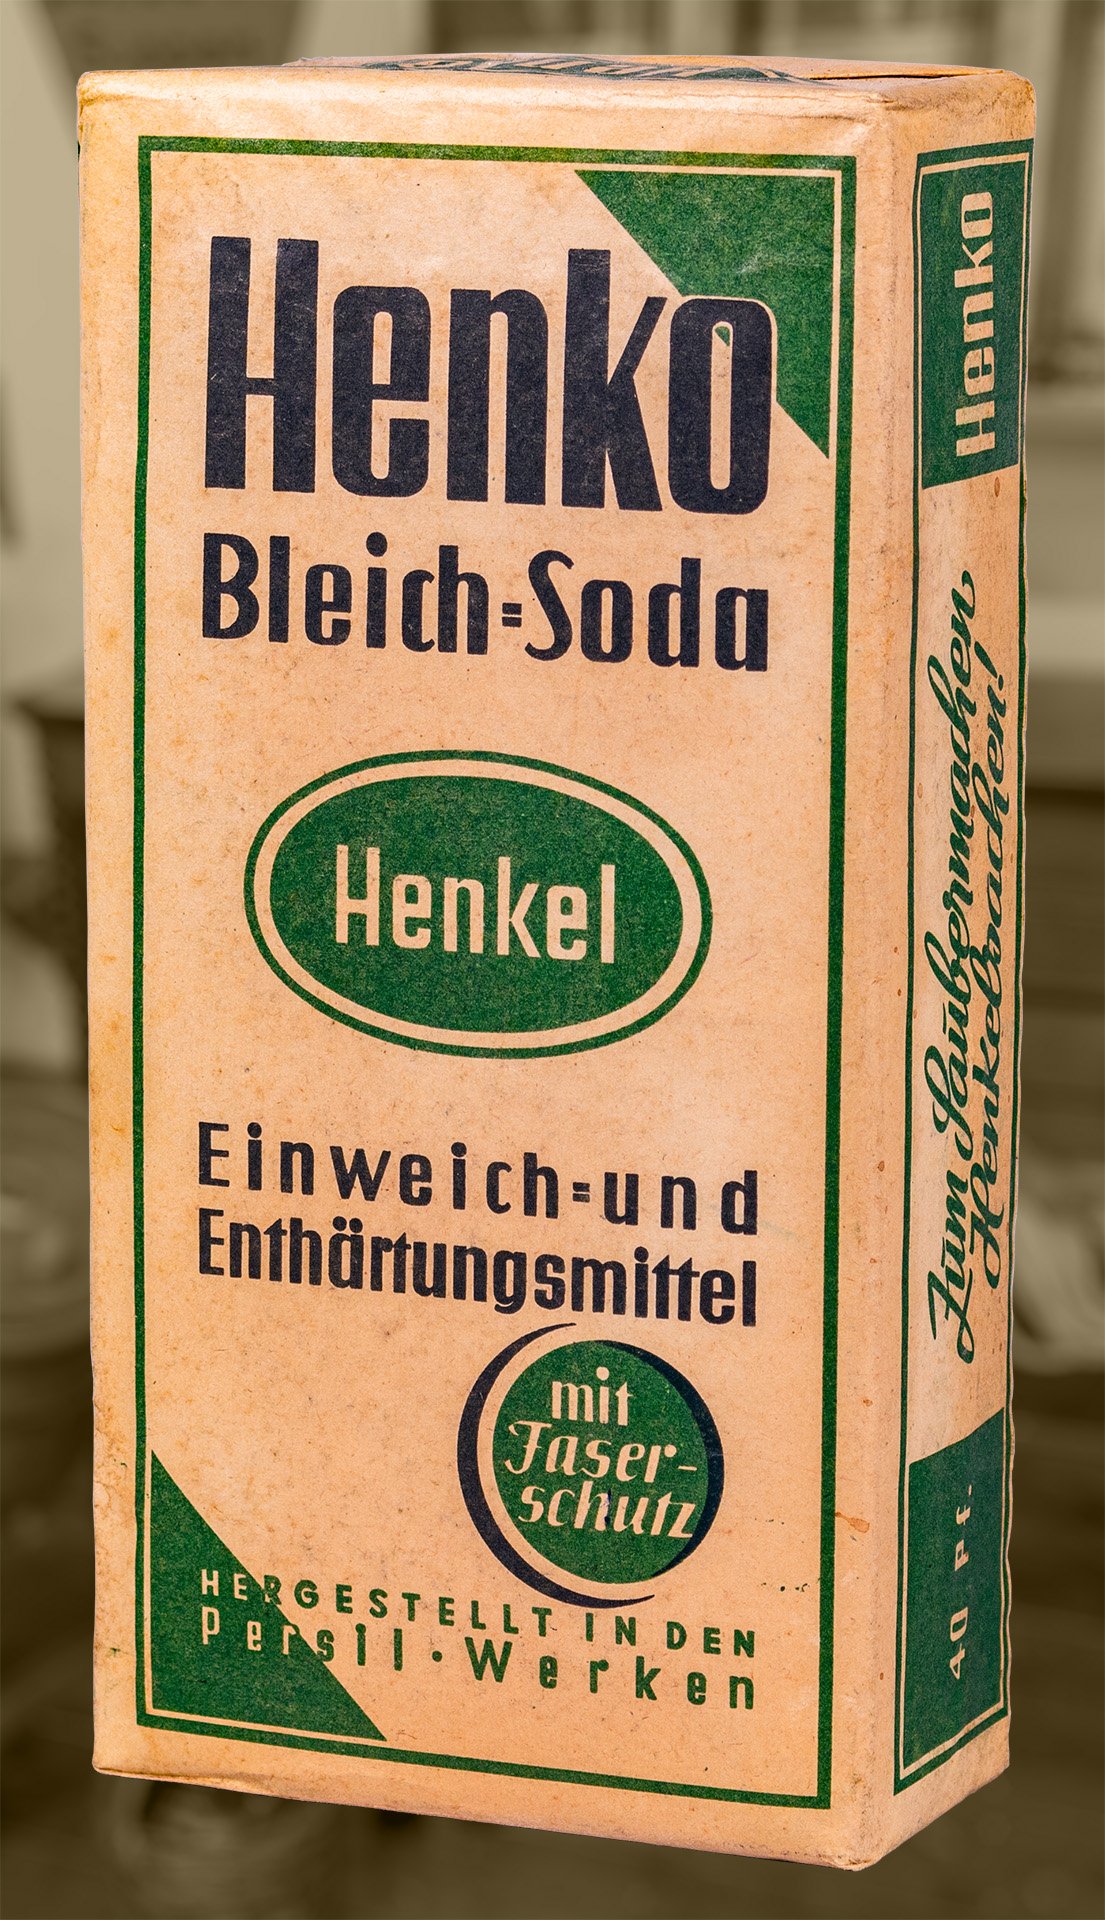 Henko Bleich-Soda Einweich- und Enthärtungsmittel (Schiffahrtsmuseum Unterweser CC BY-NC-SA)